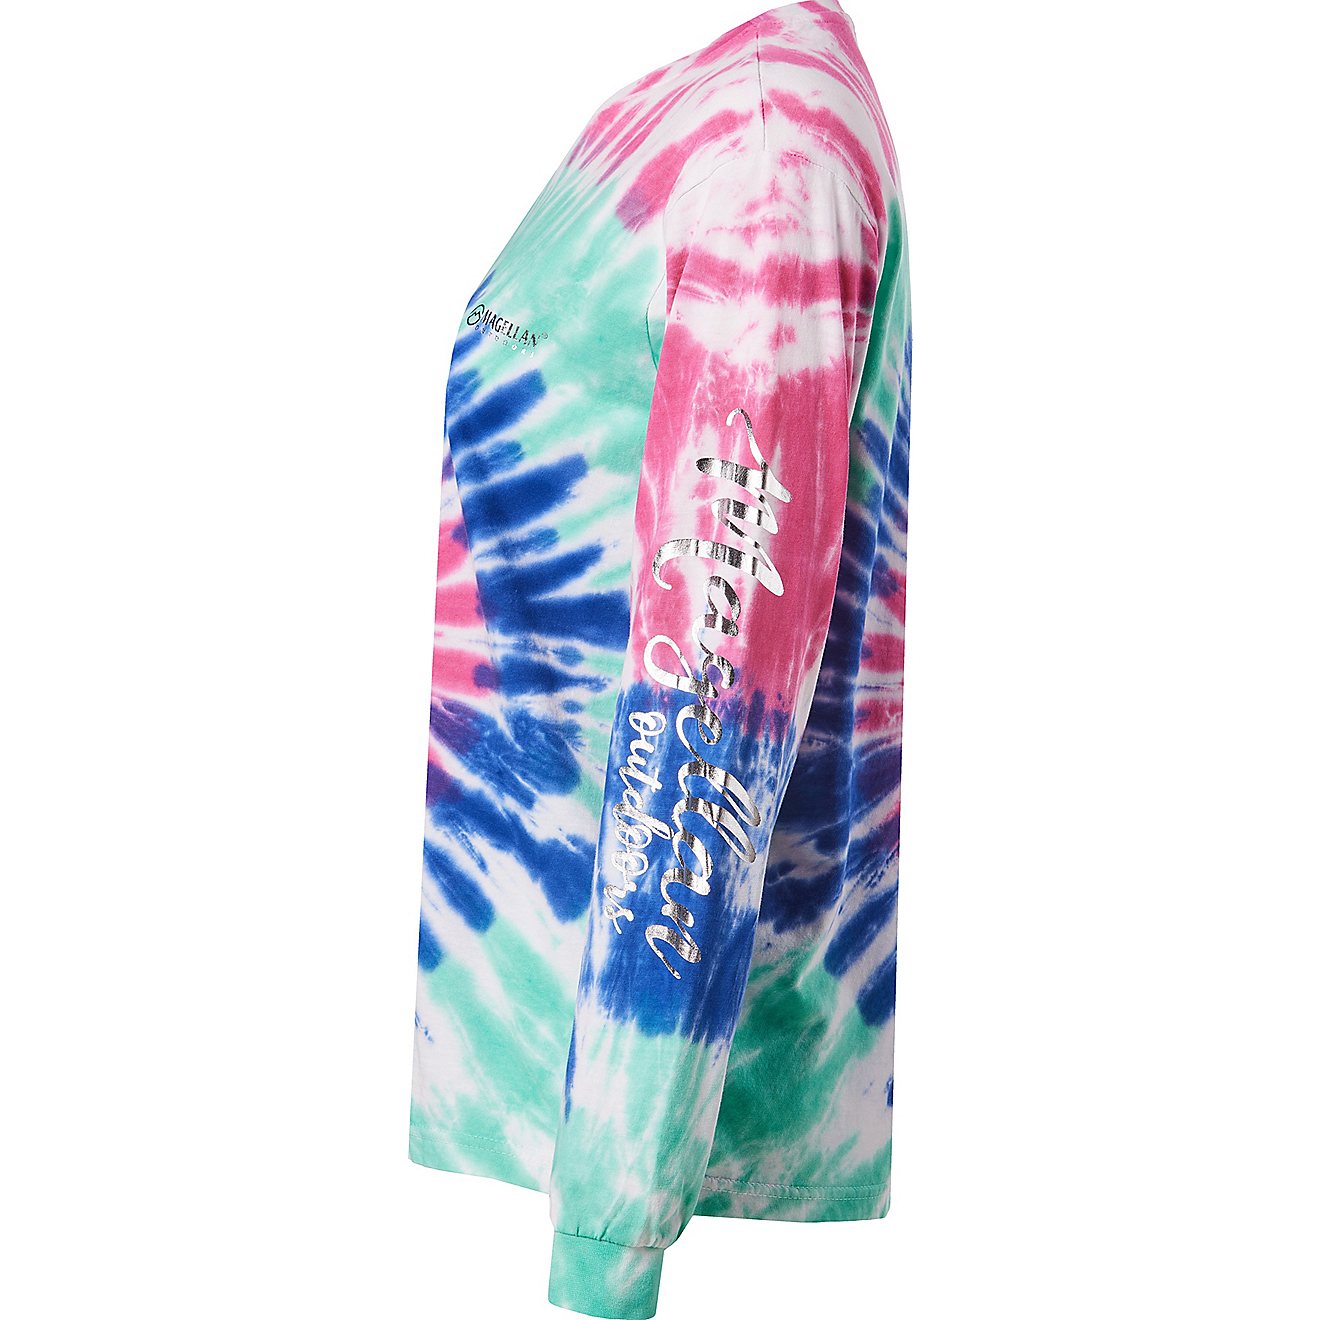 Magellan Outdoors Girls' Tie Dye Logo Long Sleeve Crew Shirt                                                                     - view number 2